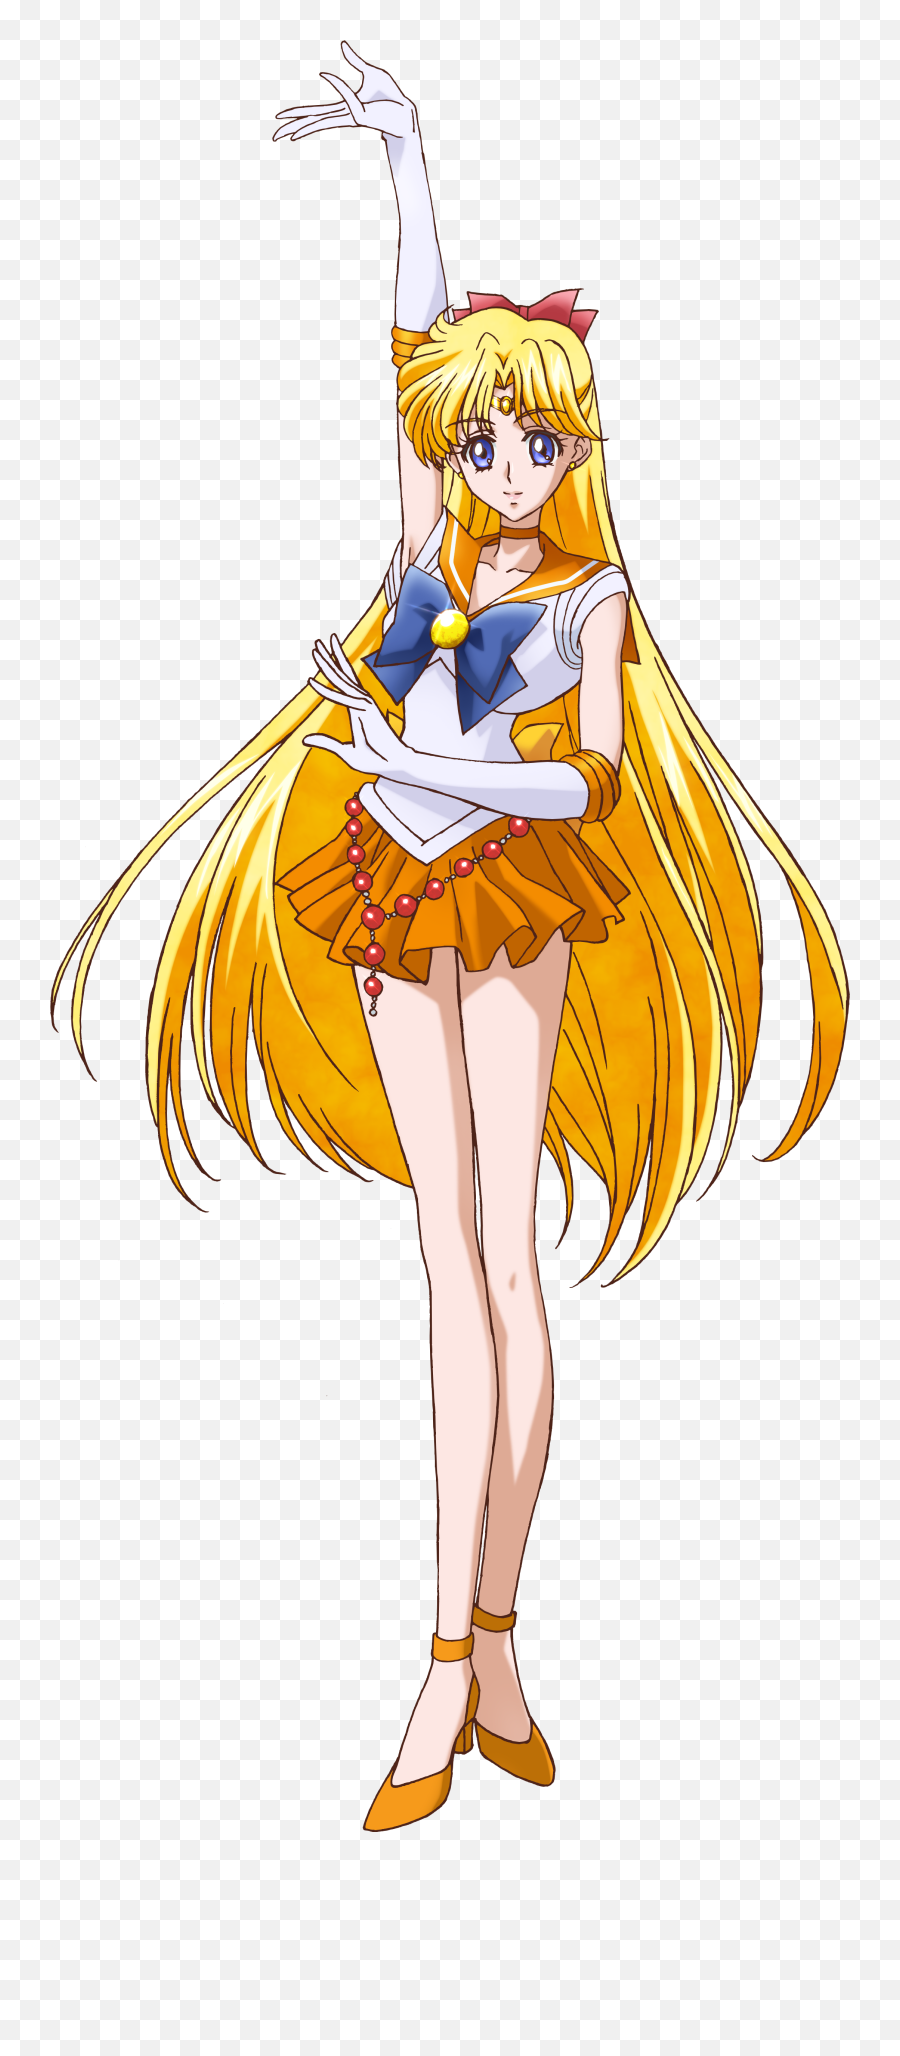 Sailor Venus - Immagini Sailor Venus Crystal Png,Sailor Venus Png